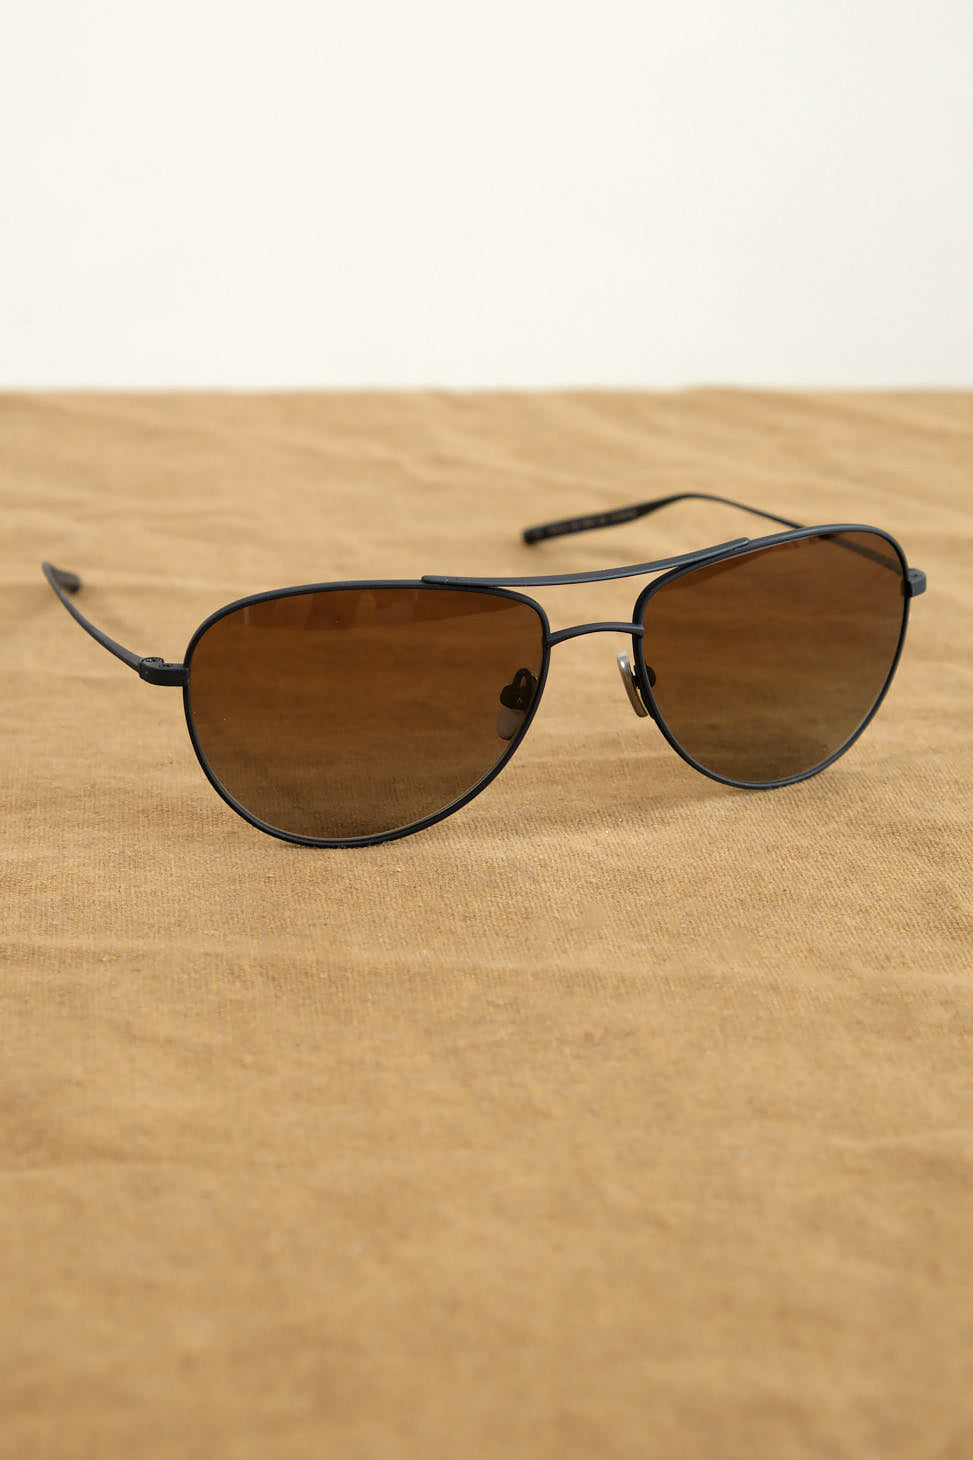 Pratt Sunglasses on table